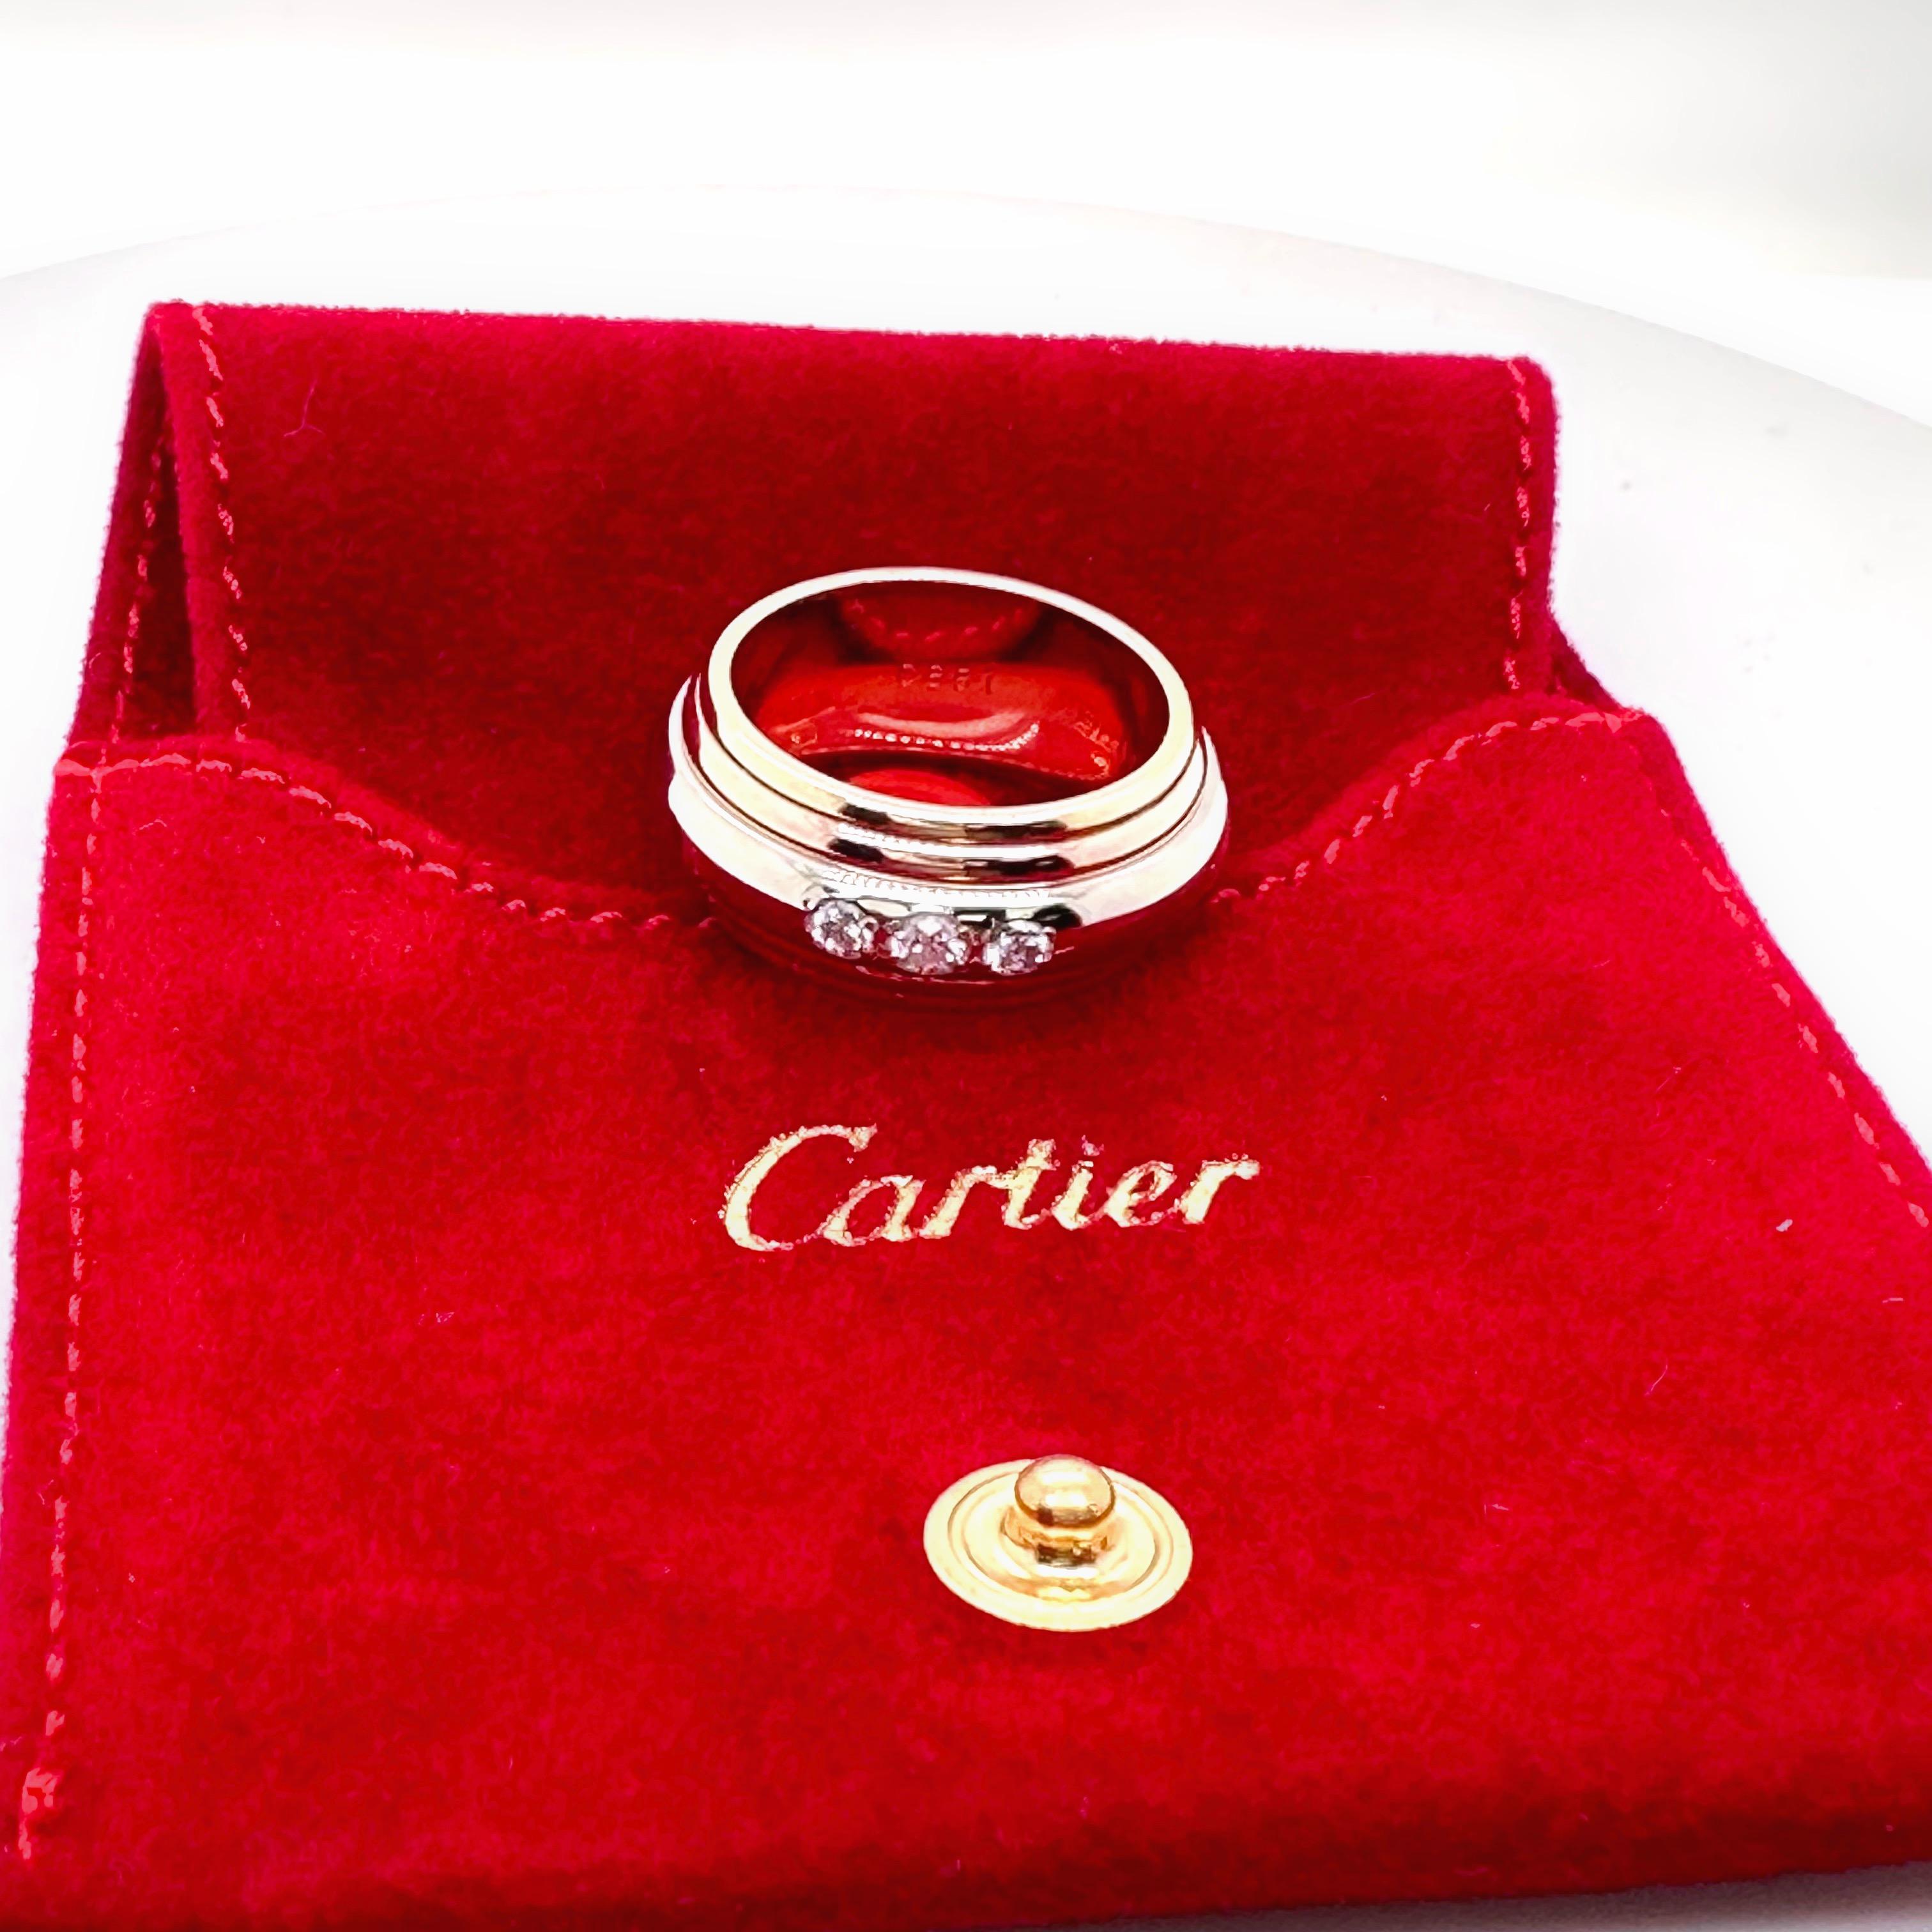 Cartier Saturne Collection Multi-Tone Gold Diamond Band Ring
Stil:  Band
Referenznummer:   B46468
Metall:   Mehrfarbig 18kt Weiß-Gelb-Roségold
Größe:  6,5 / 52, 10 mm Breite
Wahrzeichen:   Cartier 750 986619 52 © CARTIER 1990
Enthält:   Cartier